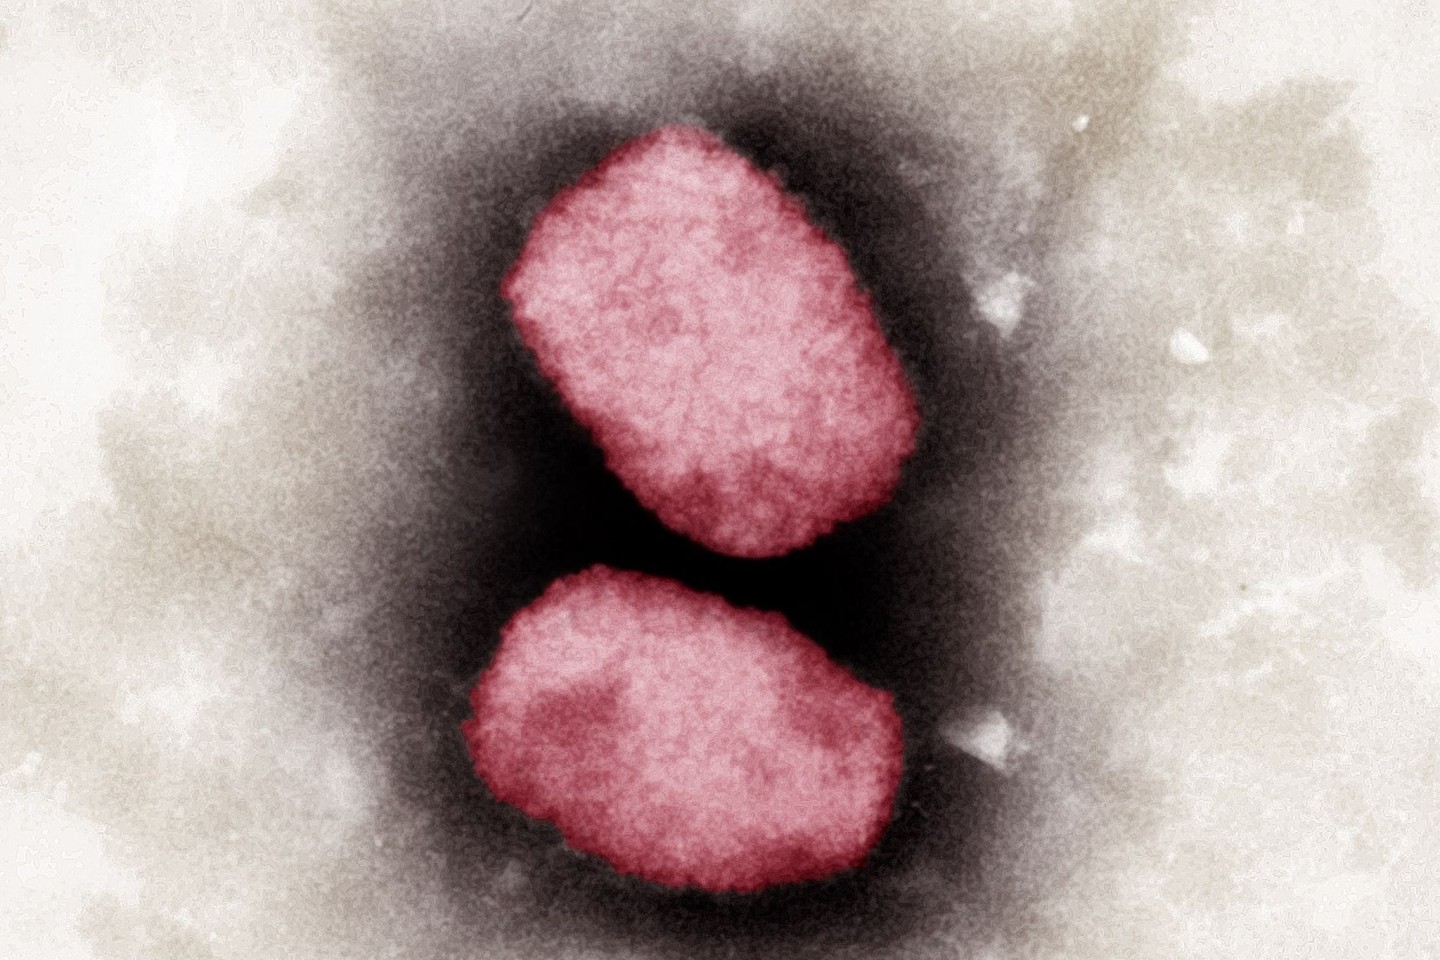 Elektronenmikroskopische Aufnahme von Affenpocken-Viren, koloriert.